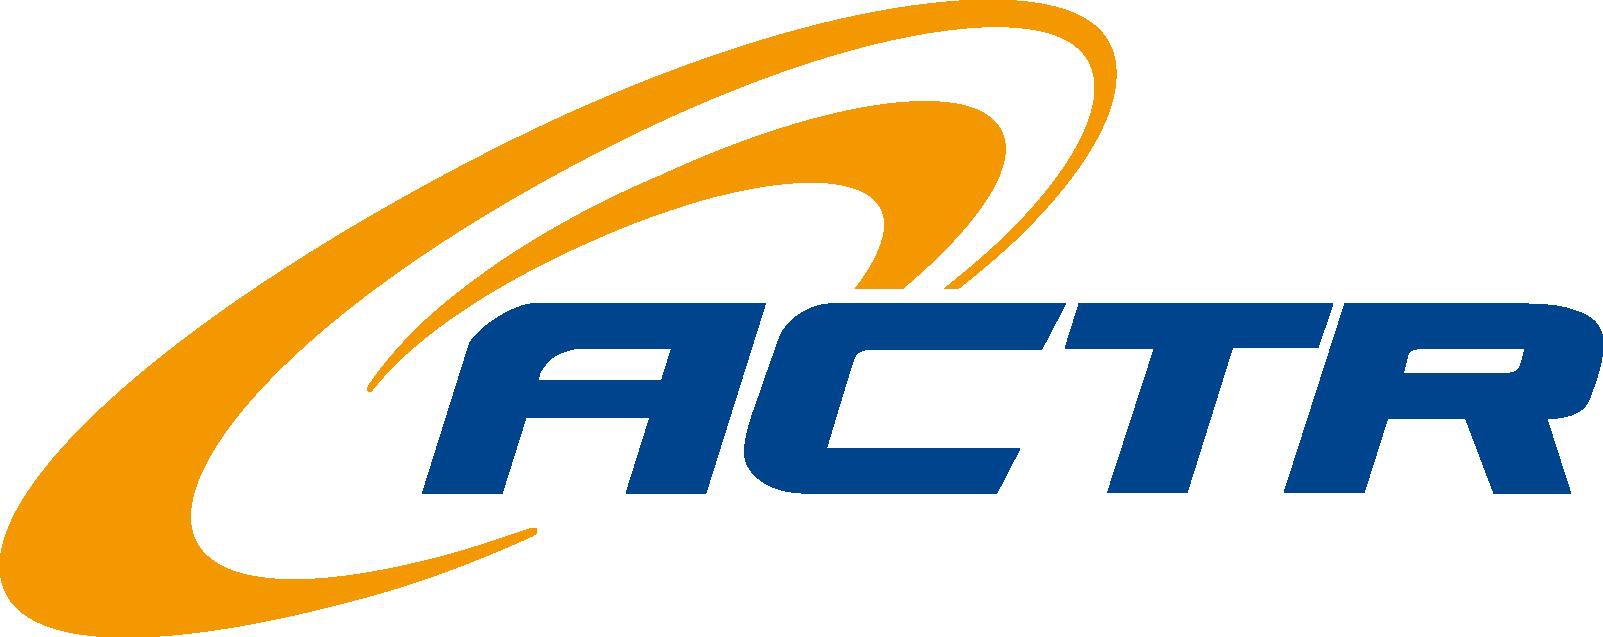 Logo Cty Arct